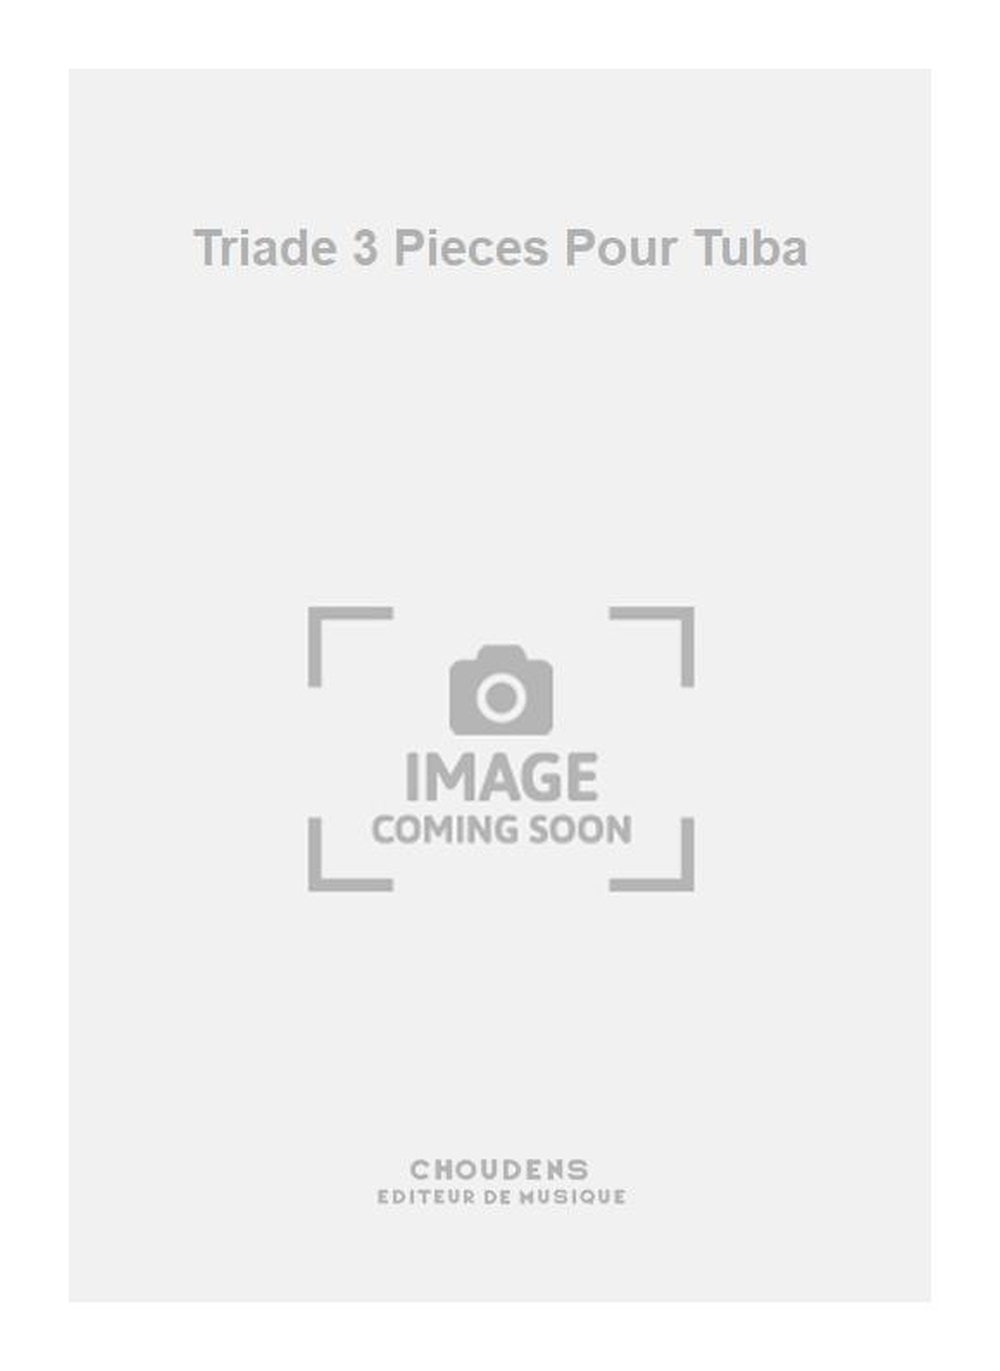 Holstein: Triade 3 Pieces Pour Tuba